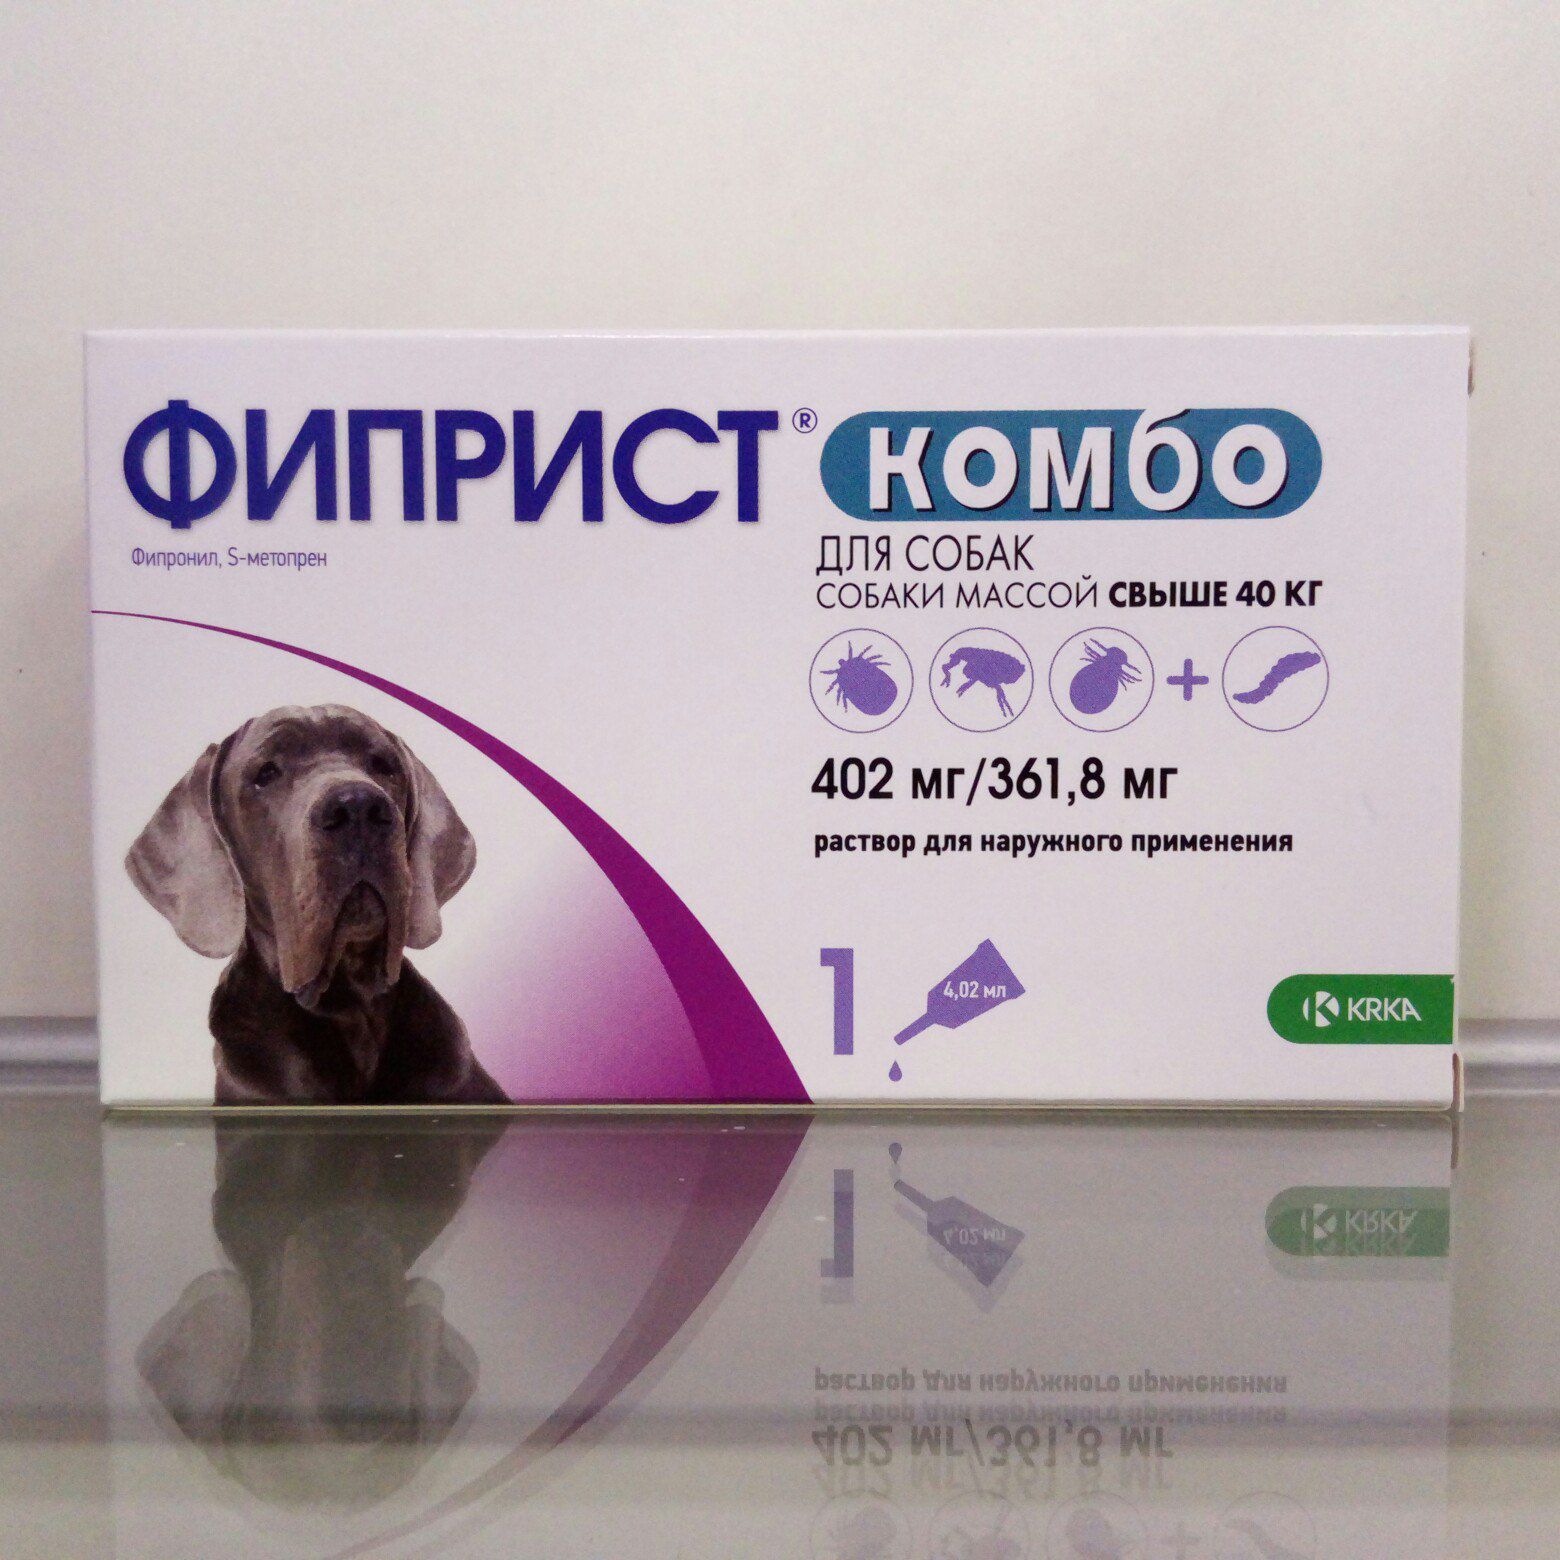 Фиприст Комобо (КРКА) для собак (более 40 кг), 1пип/уп. купить в Москве